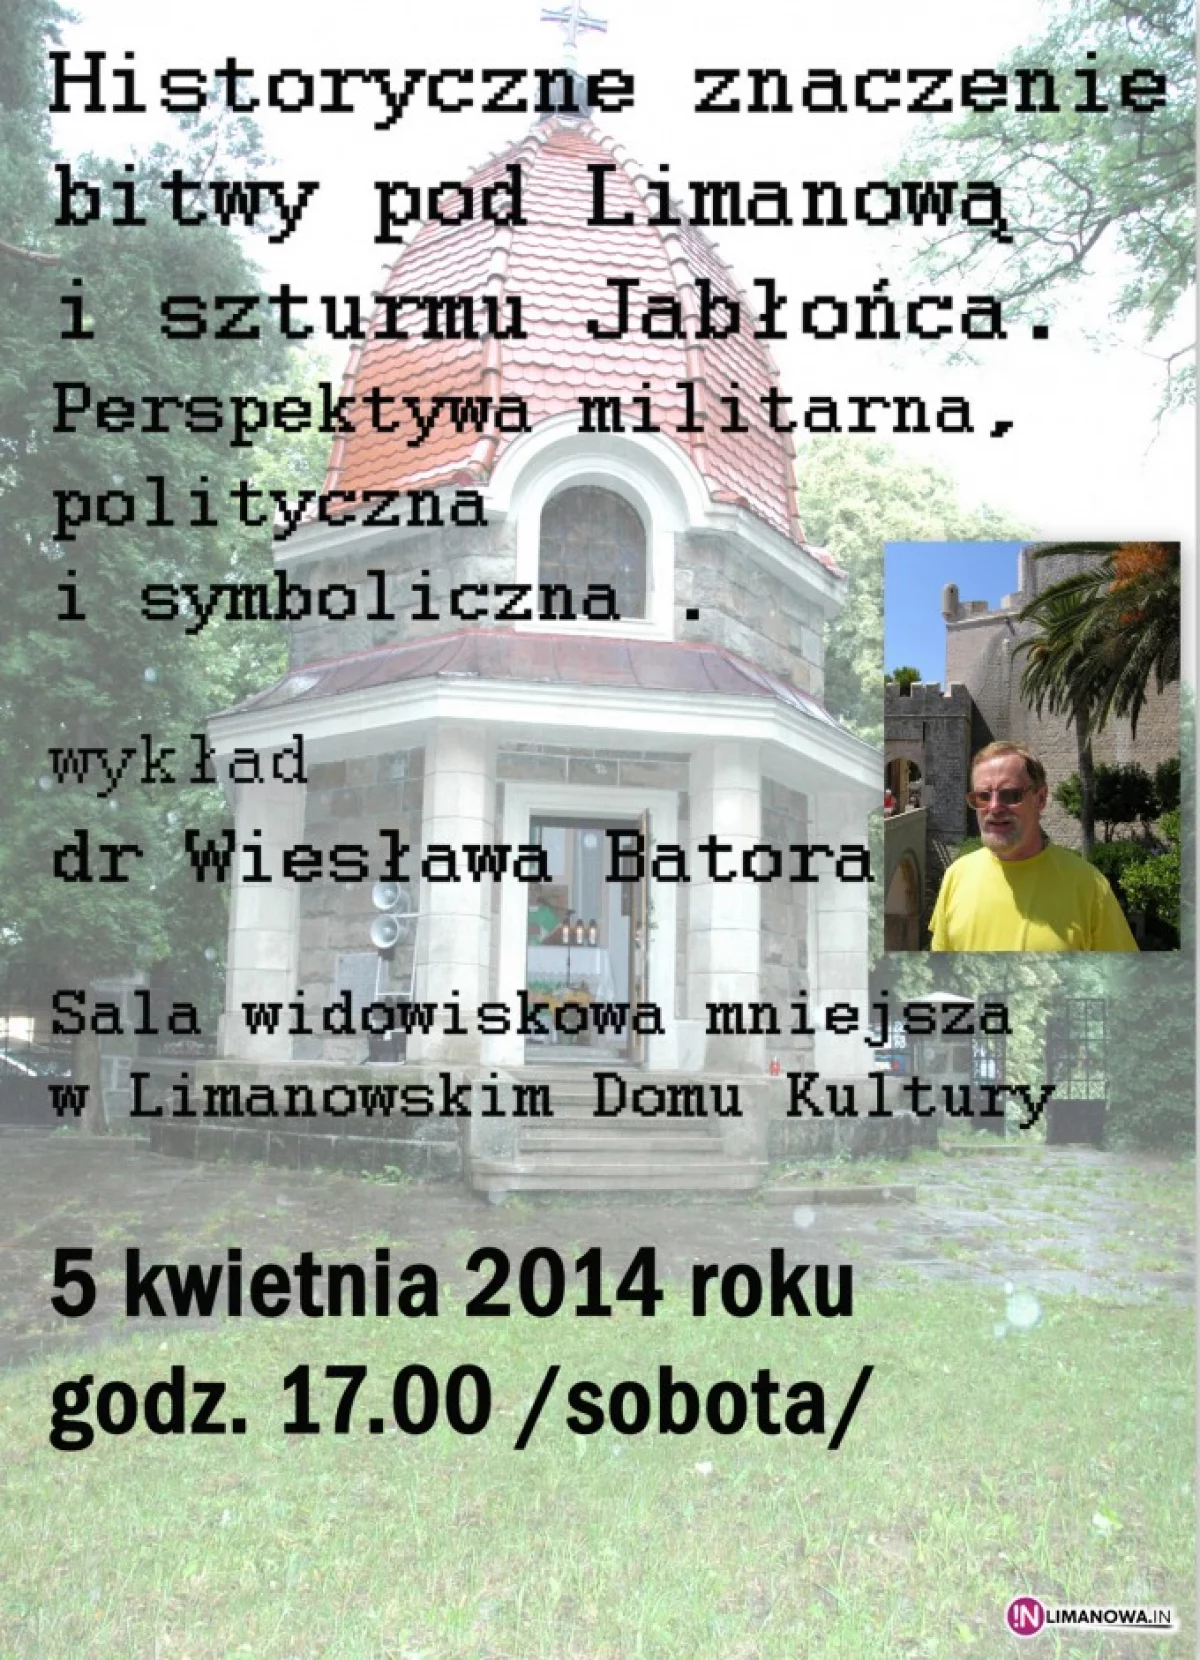 Wykład dr Wiesława Batora